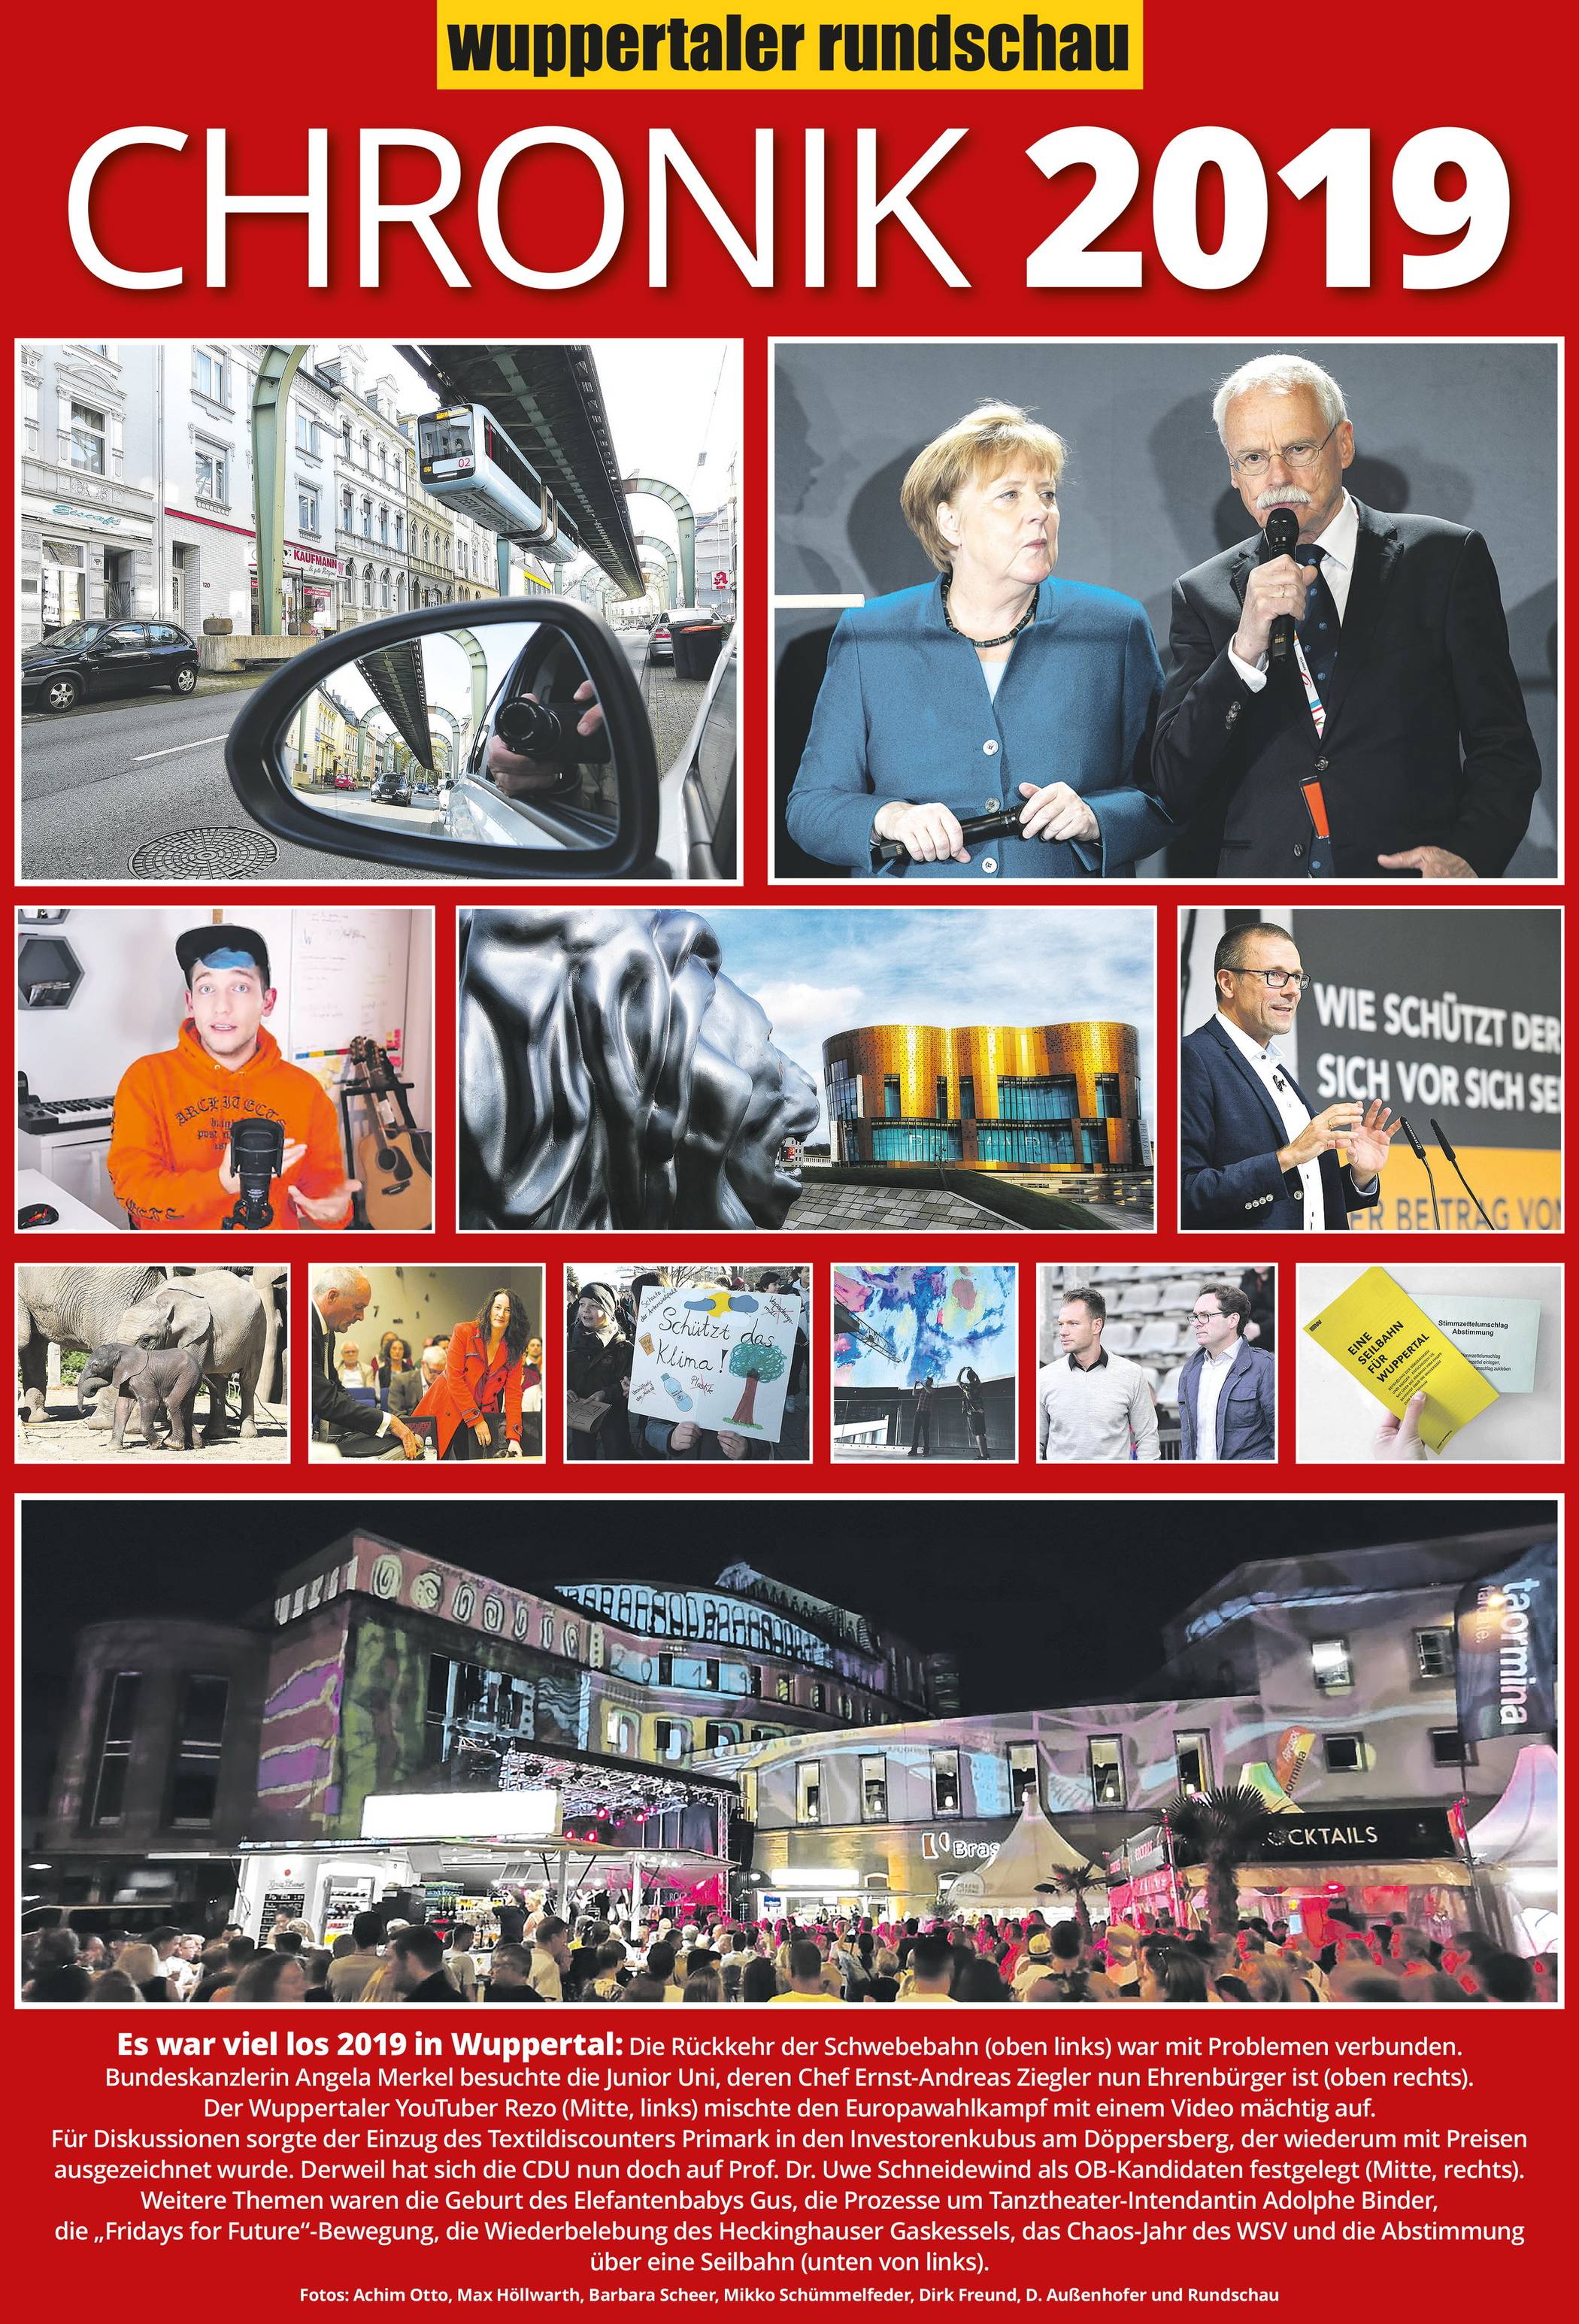 Wuppertals Chronik 2019: P wie Prozesse